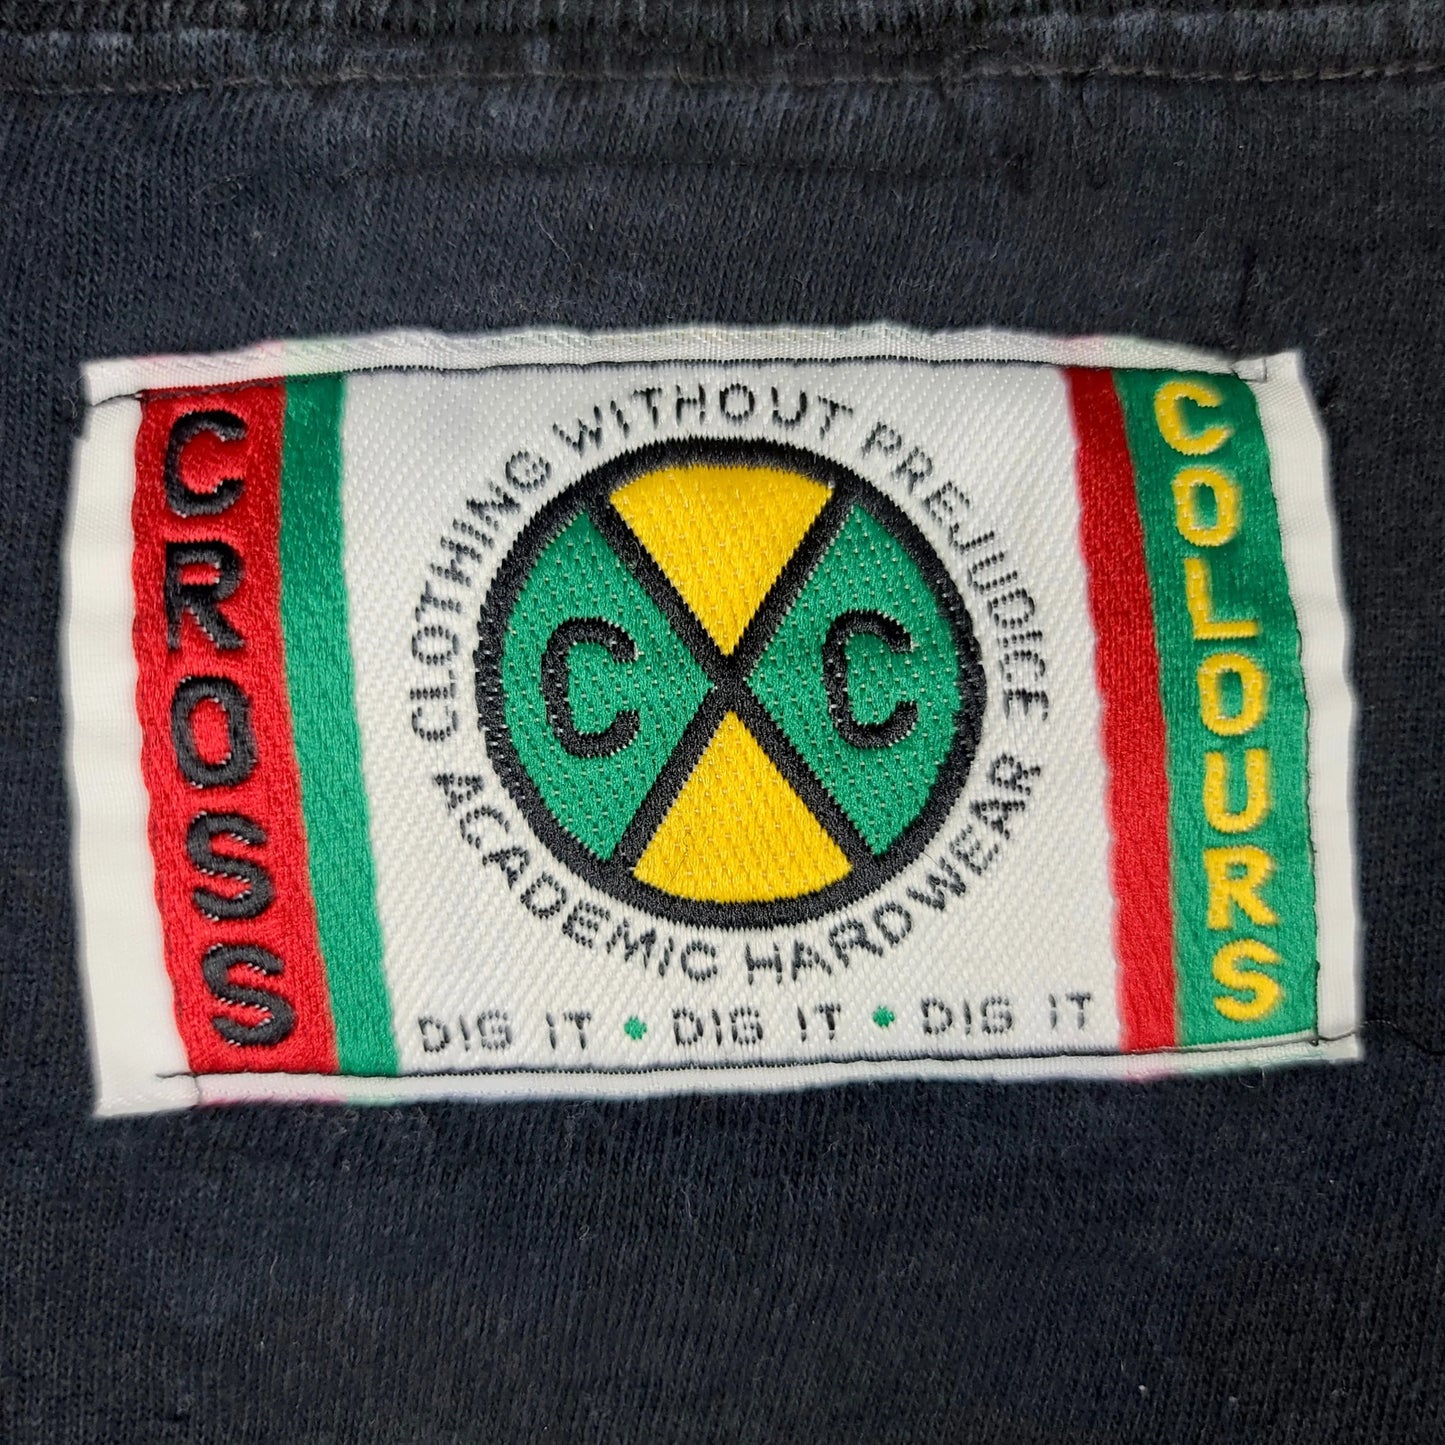 90’S Cross Colours Club Safe Sex T-Shirt